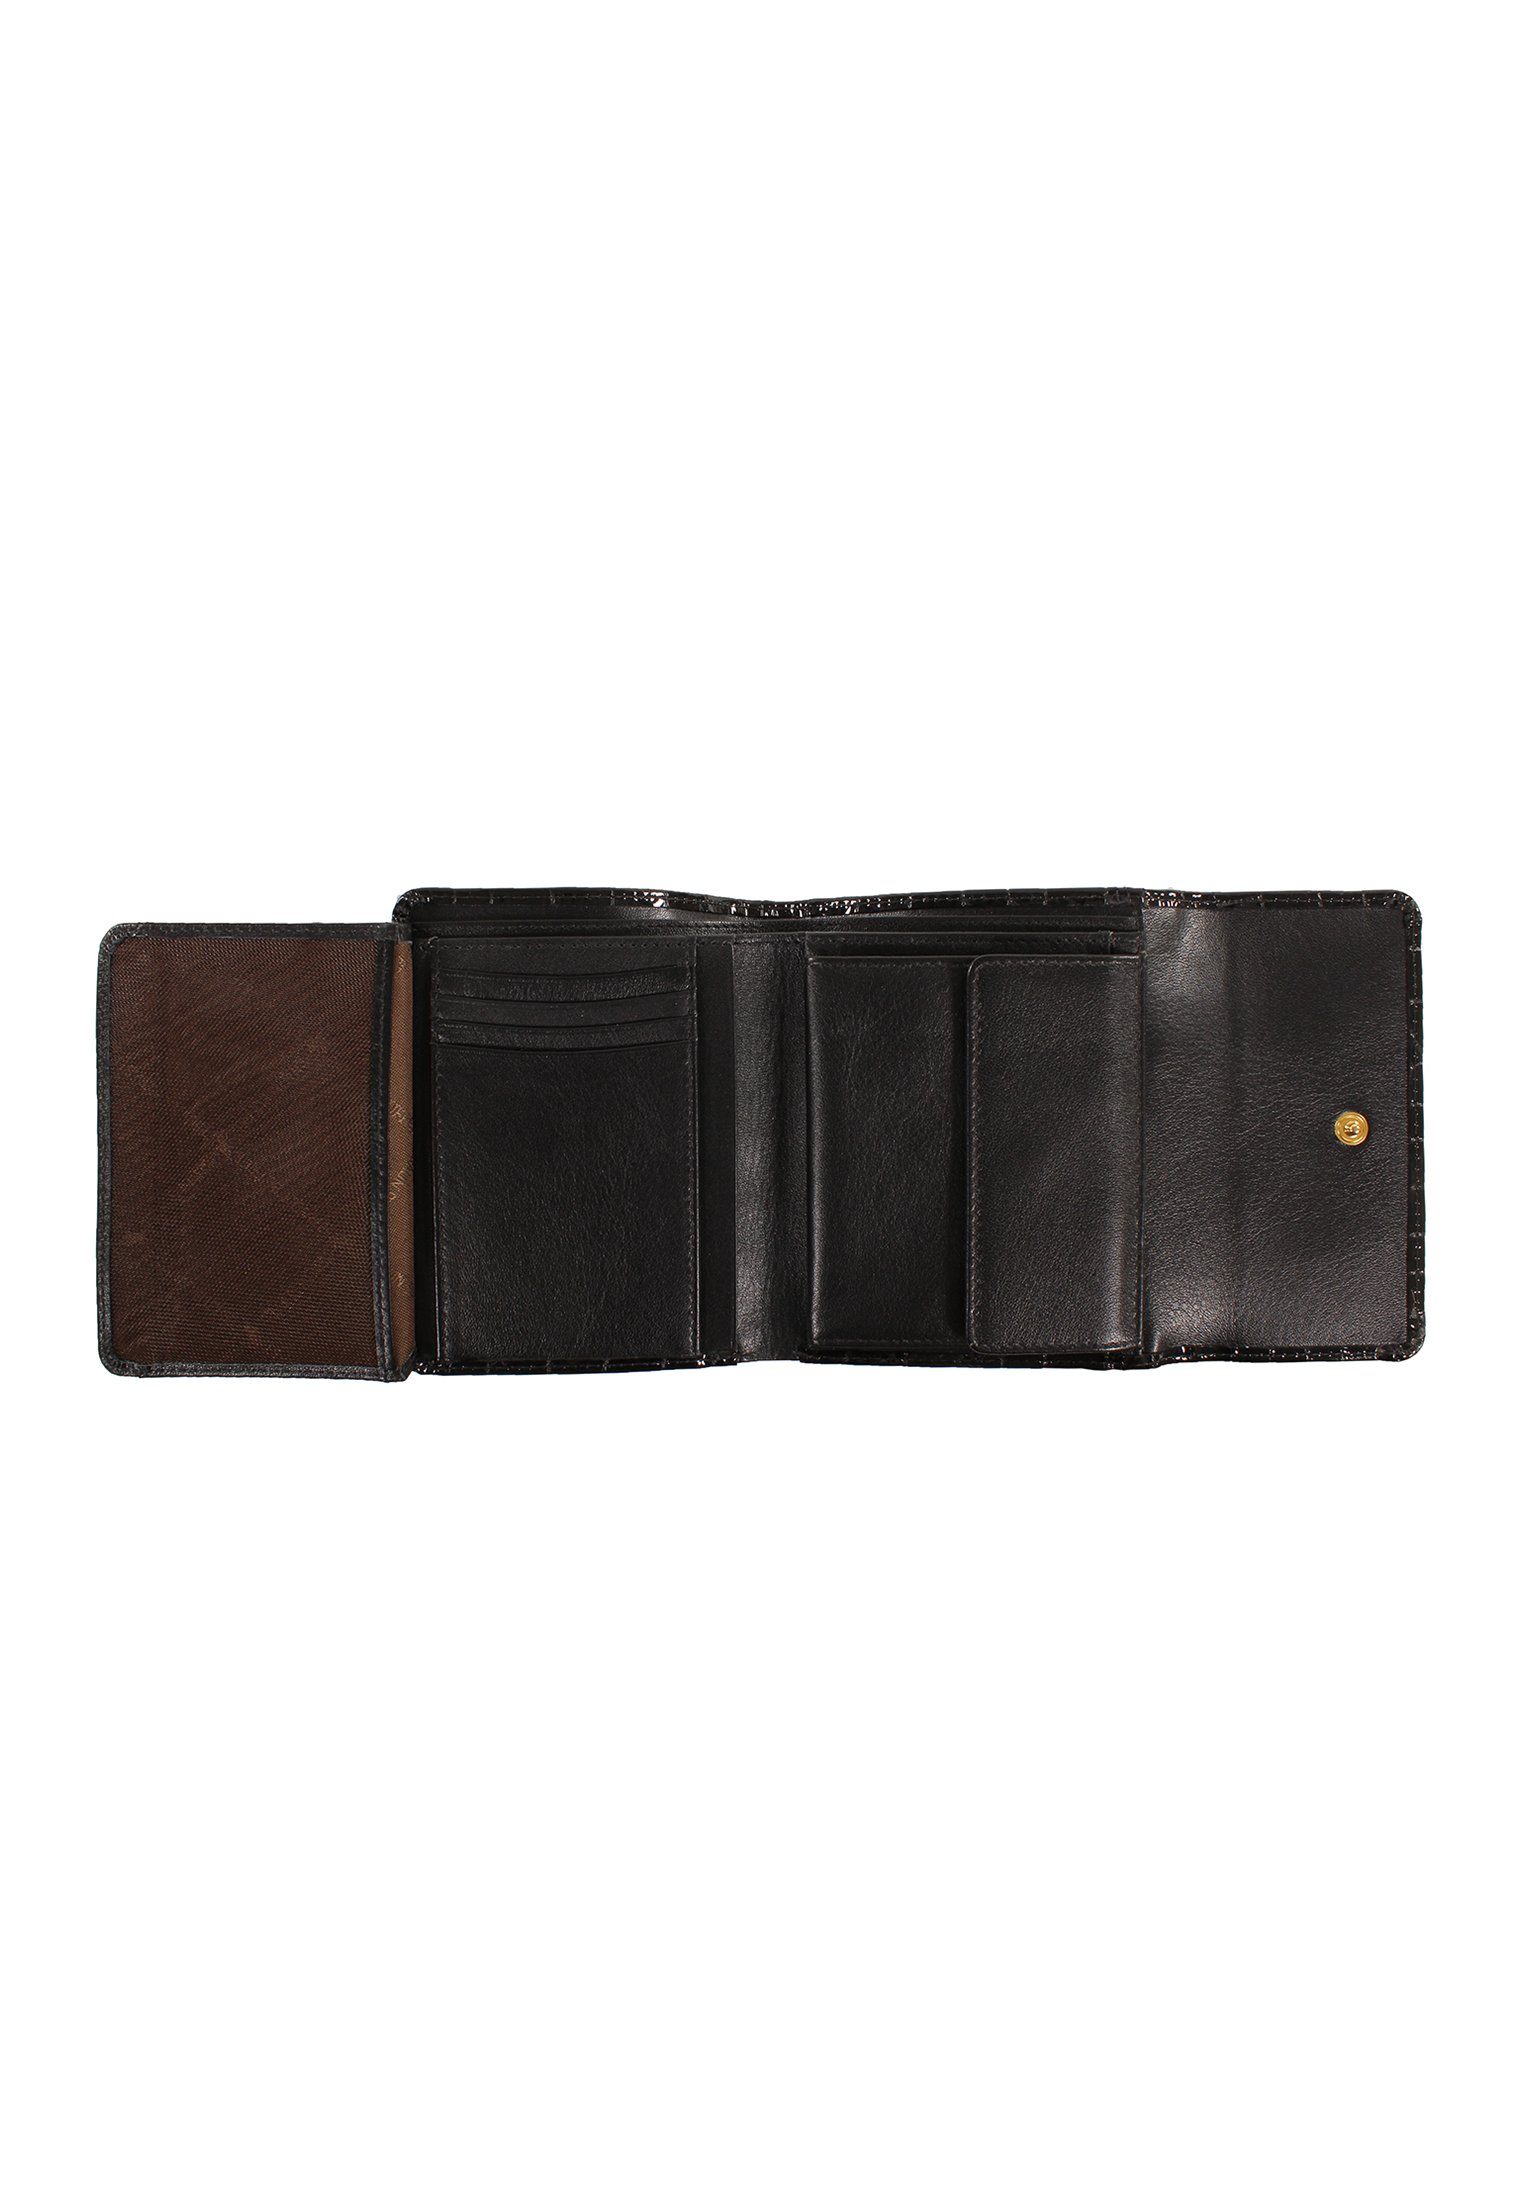 Geldbörse schwarz mit VERONA Büffel 8CS, Braun Glanzeffekt M